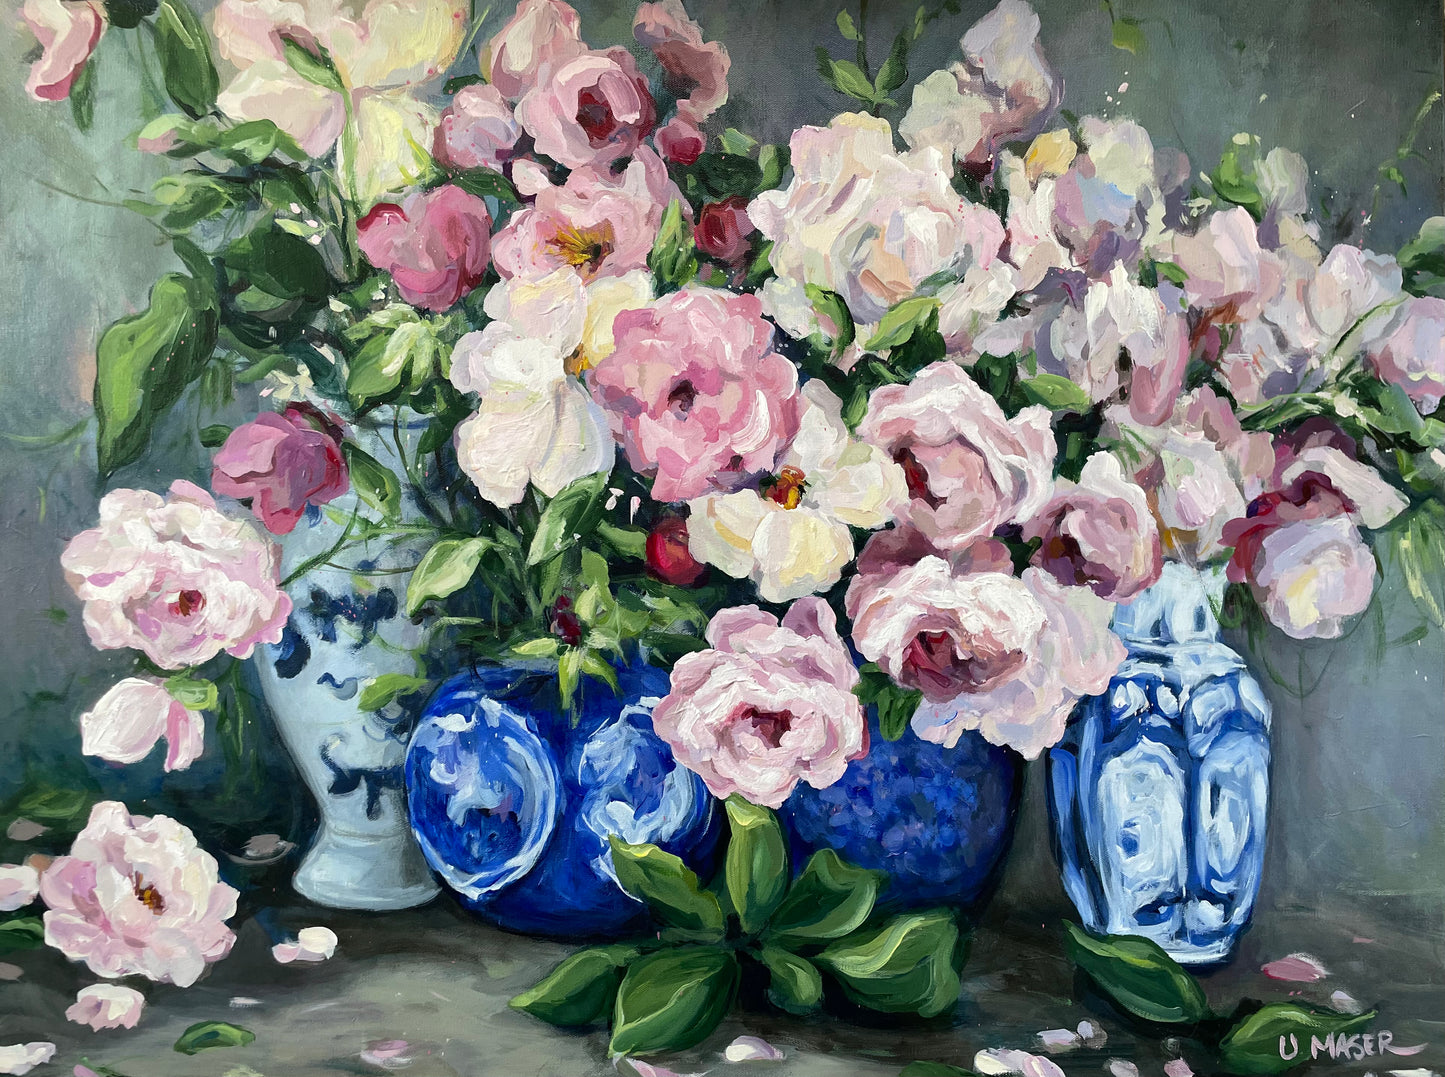 Four Blue Vases